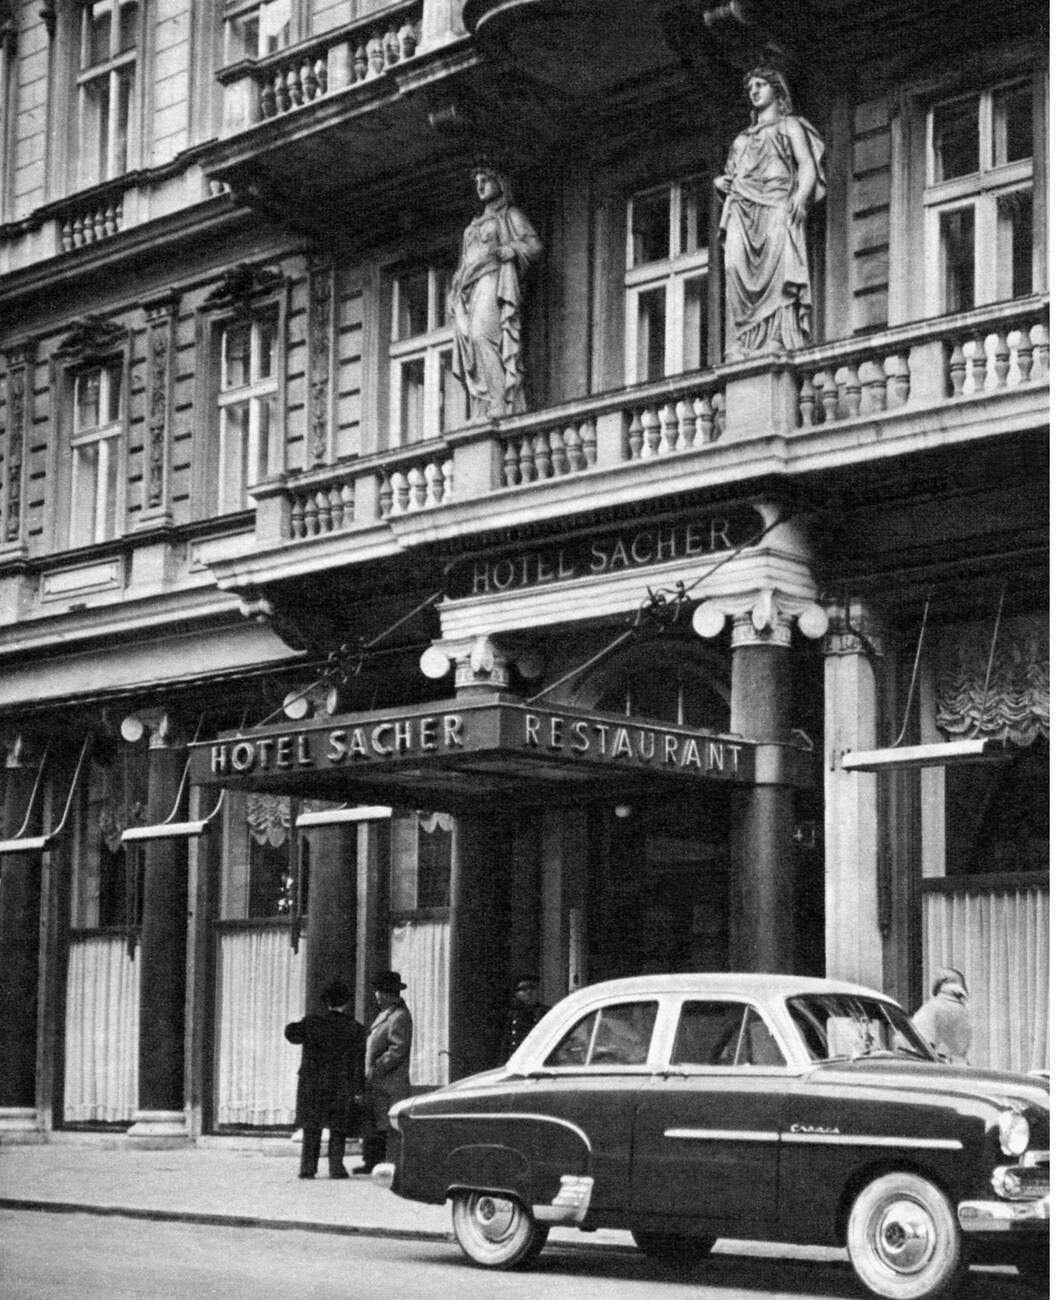 Hotel "Sacher" exterior view in Vienna, Austria, 1950s.